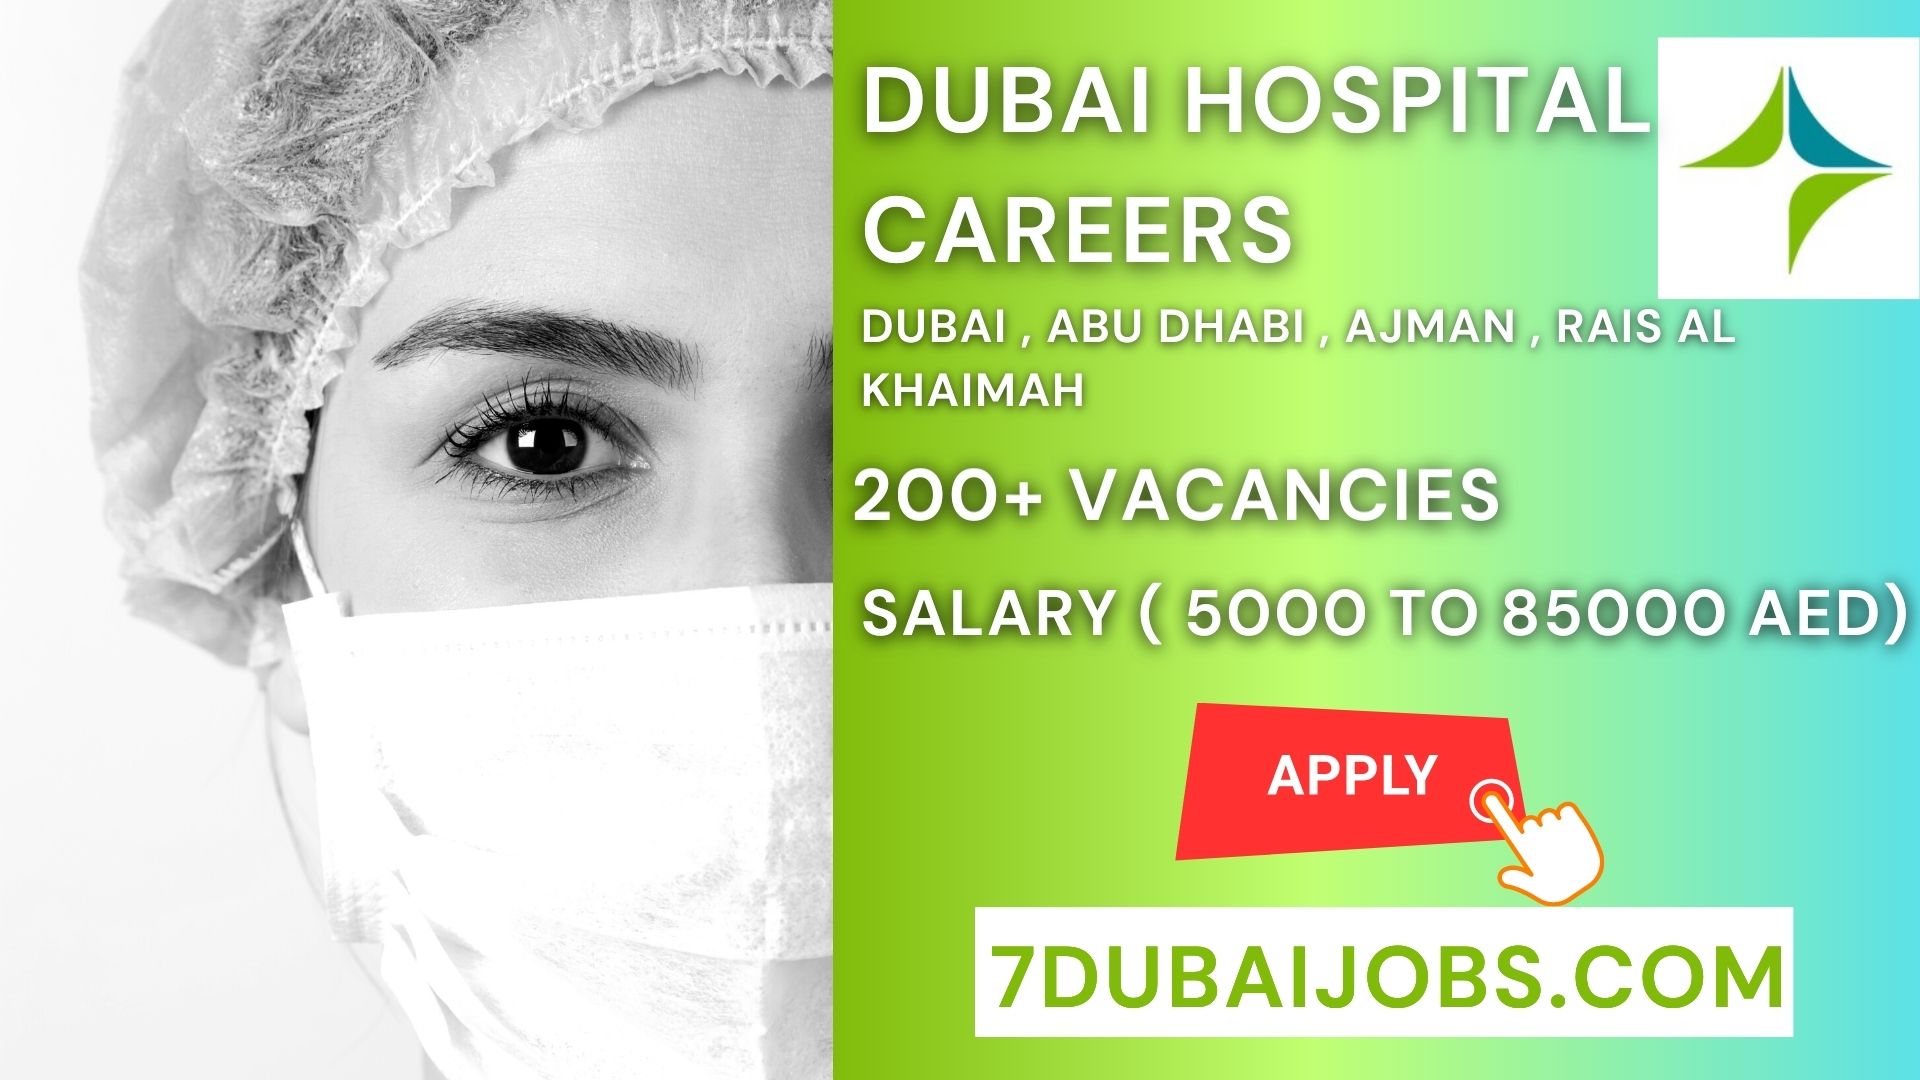 Dubai Hospital Careers 